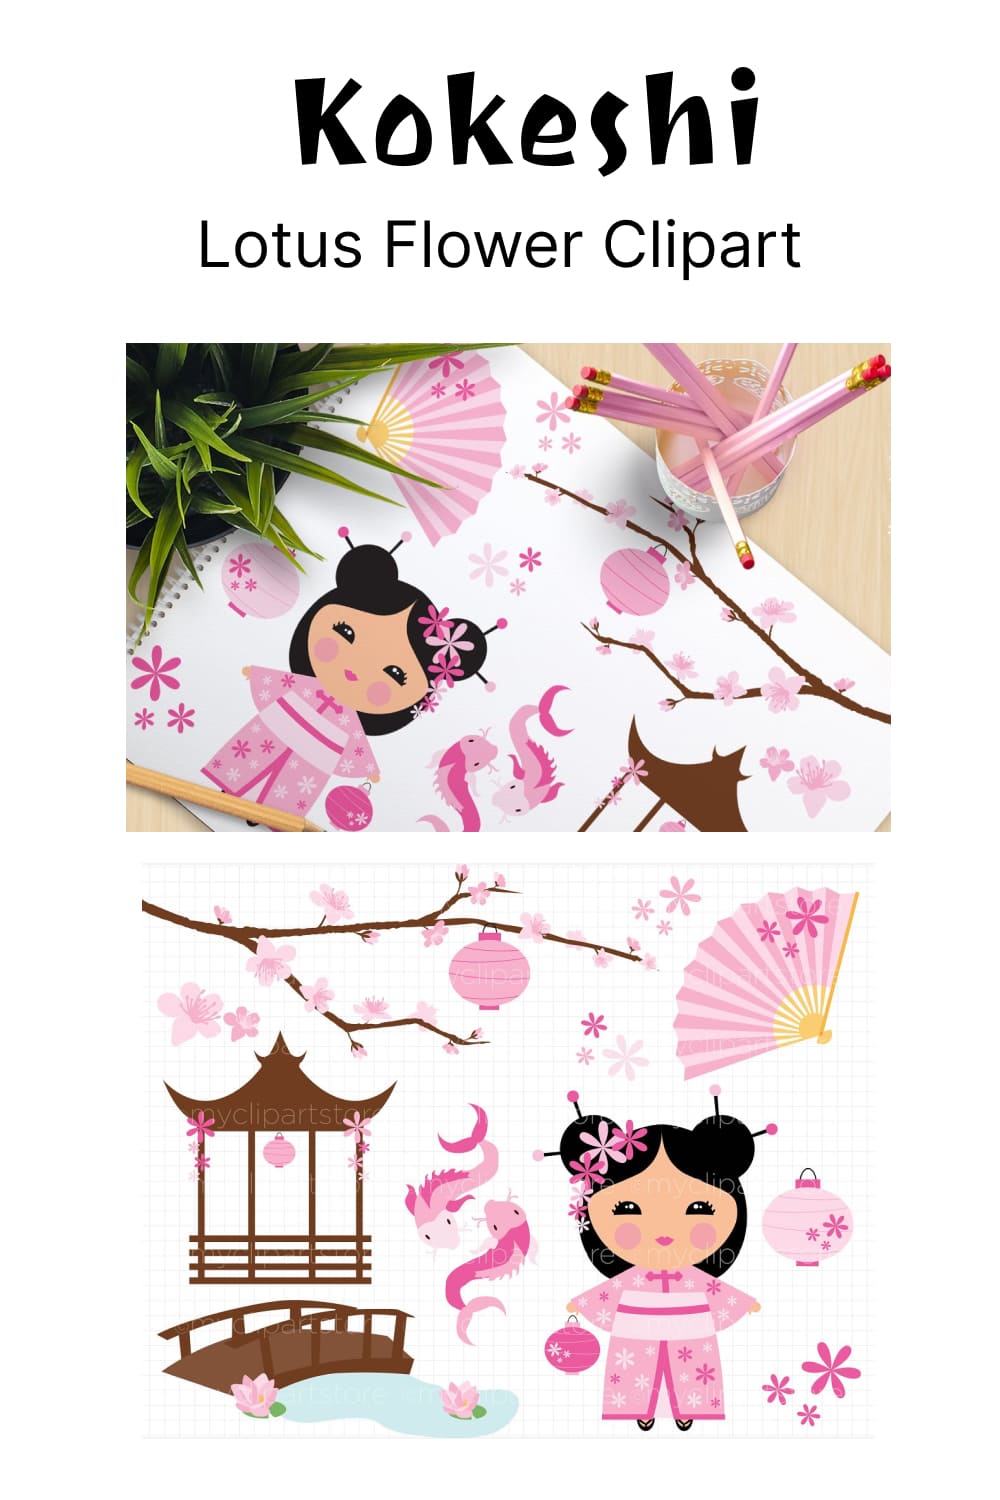 Kokeshi, Lotus Flower Clipart - Pinterest.